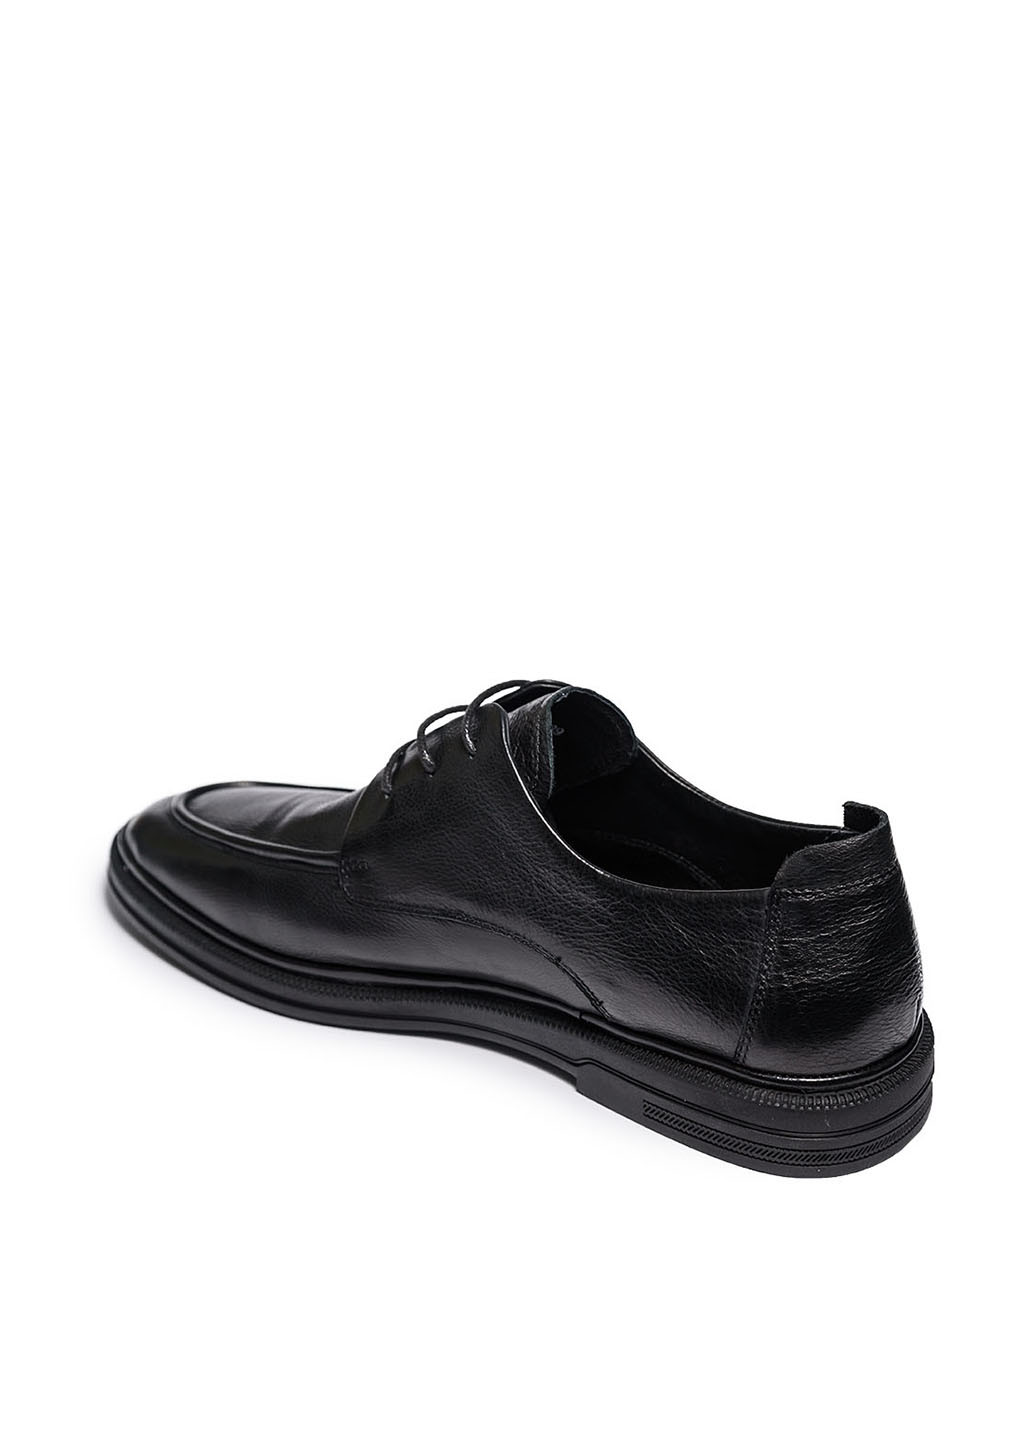 Черные классические туфли Clemento на шнурках